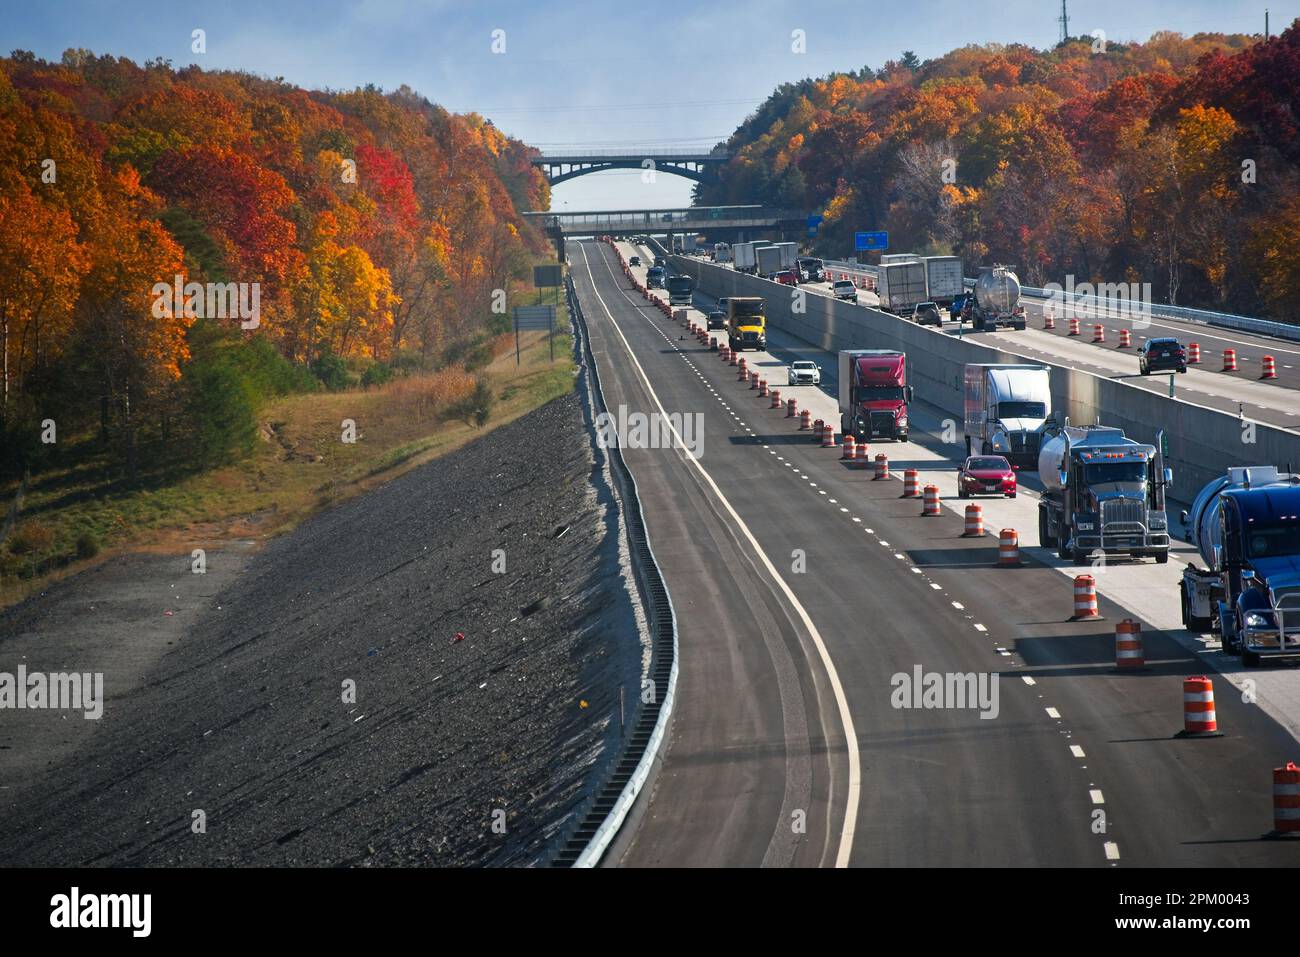 La circulation sur l'Ohio Turnpike négocie une zone de construction sur le chemin de l'entrée ou de la sortie de la vallée de Cuyahoga dans les couleurs vives de l'automne. Banque D'Images